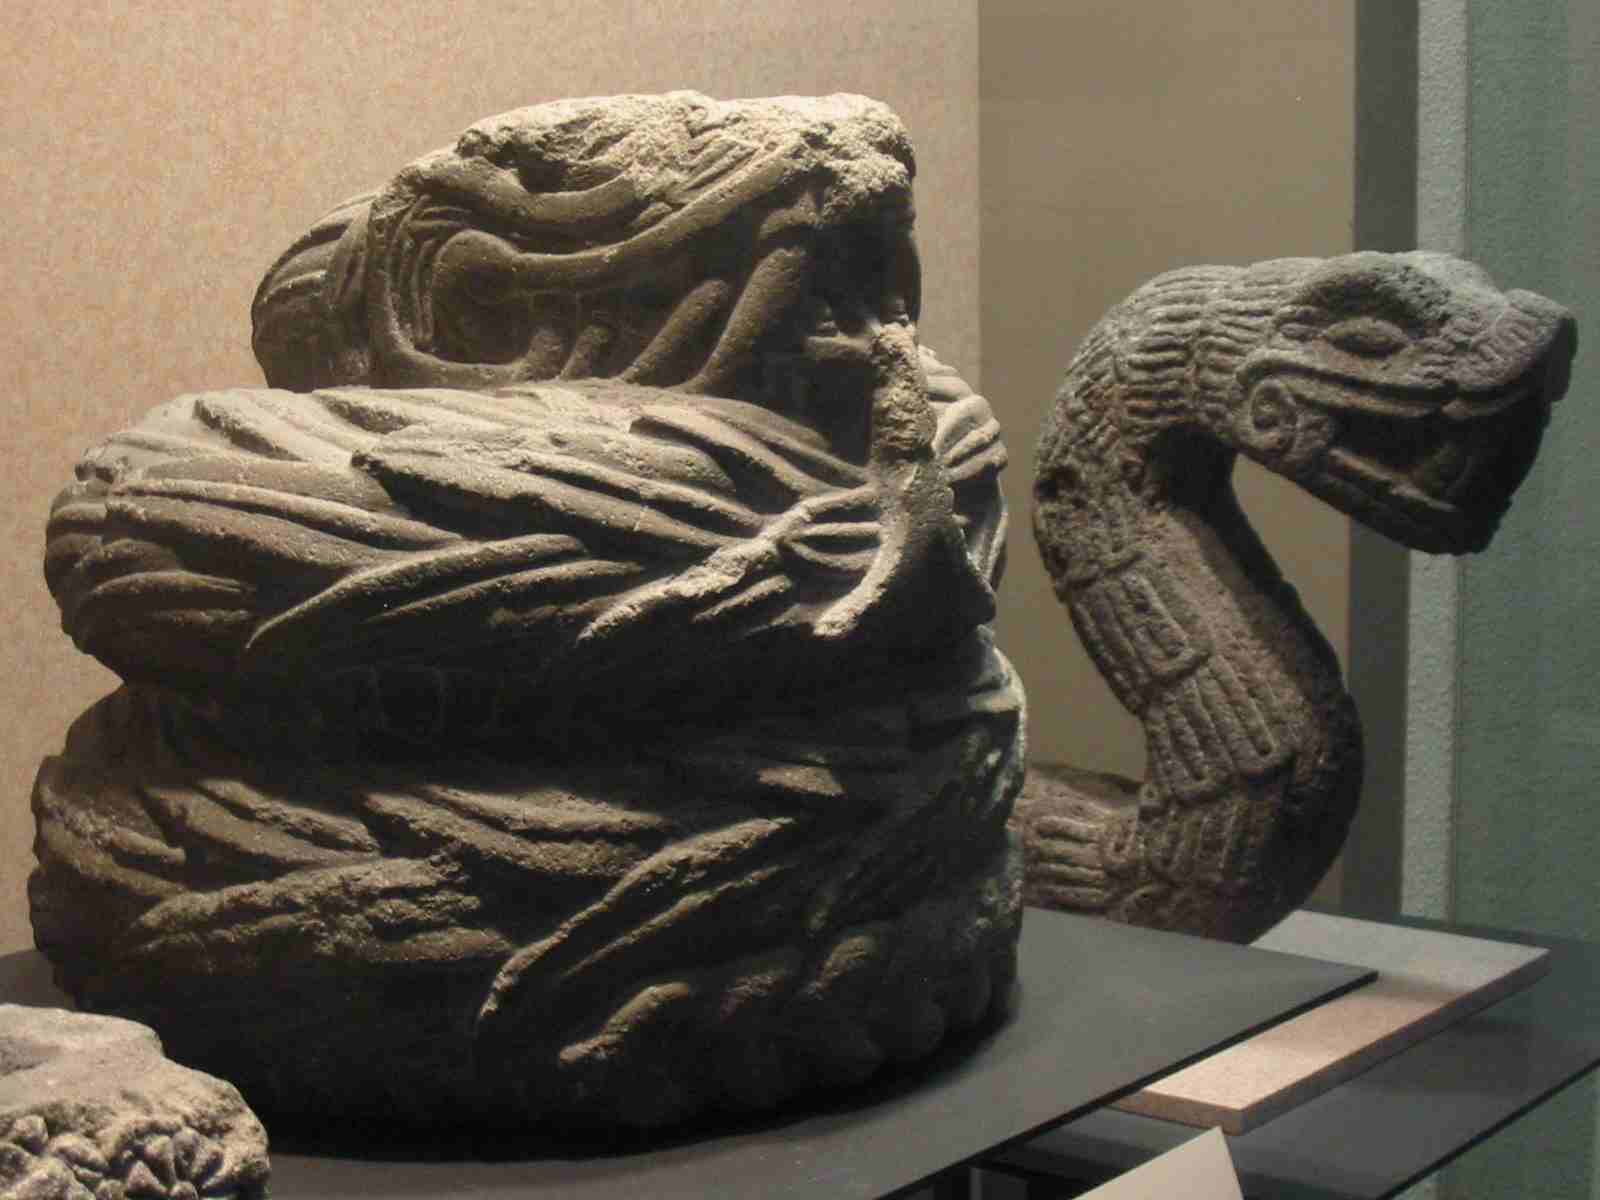 7,000 yaşındaki Ubaid kertenkele adamlarının gizemi: Eski Sümer'de Sürüngenler?? 2